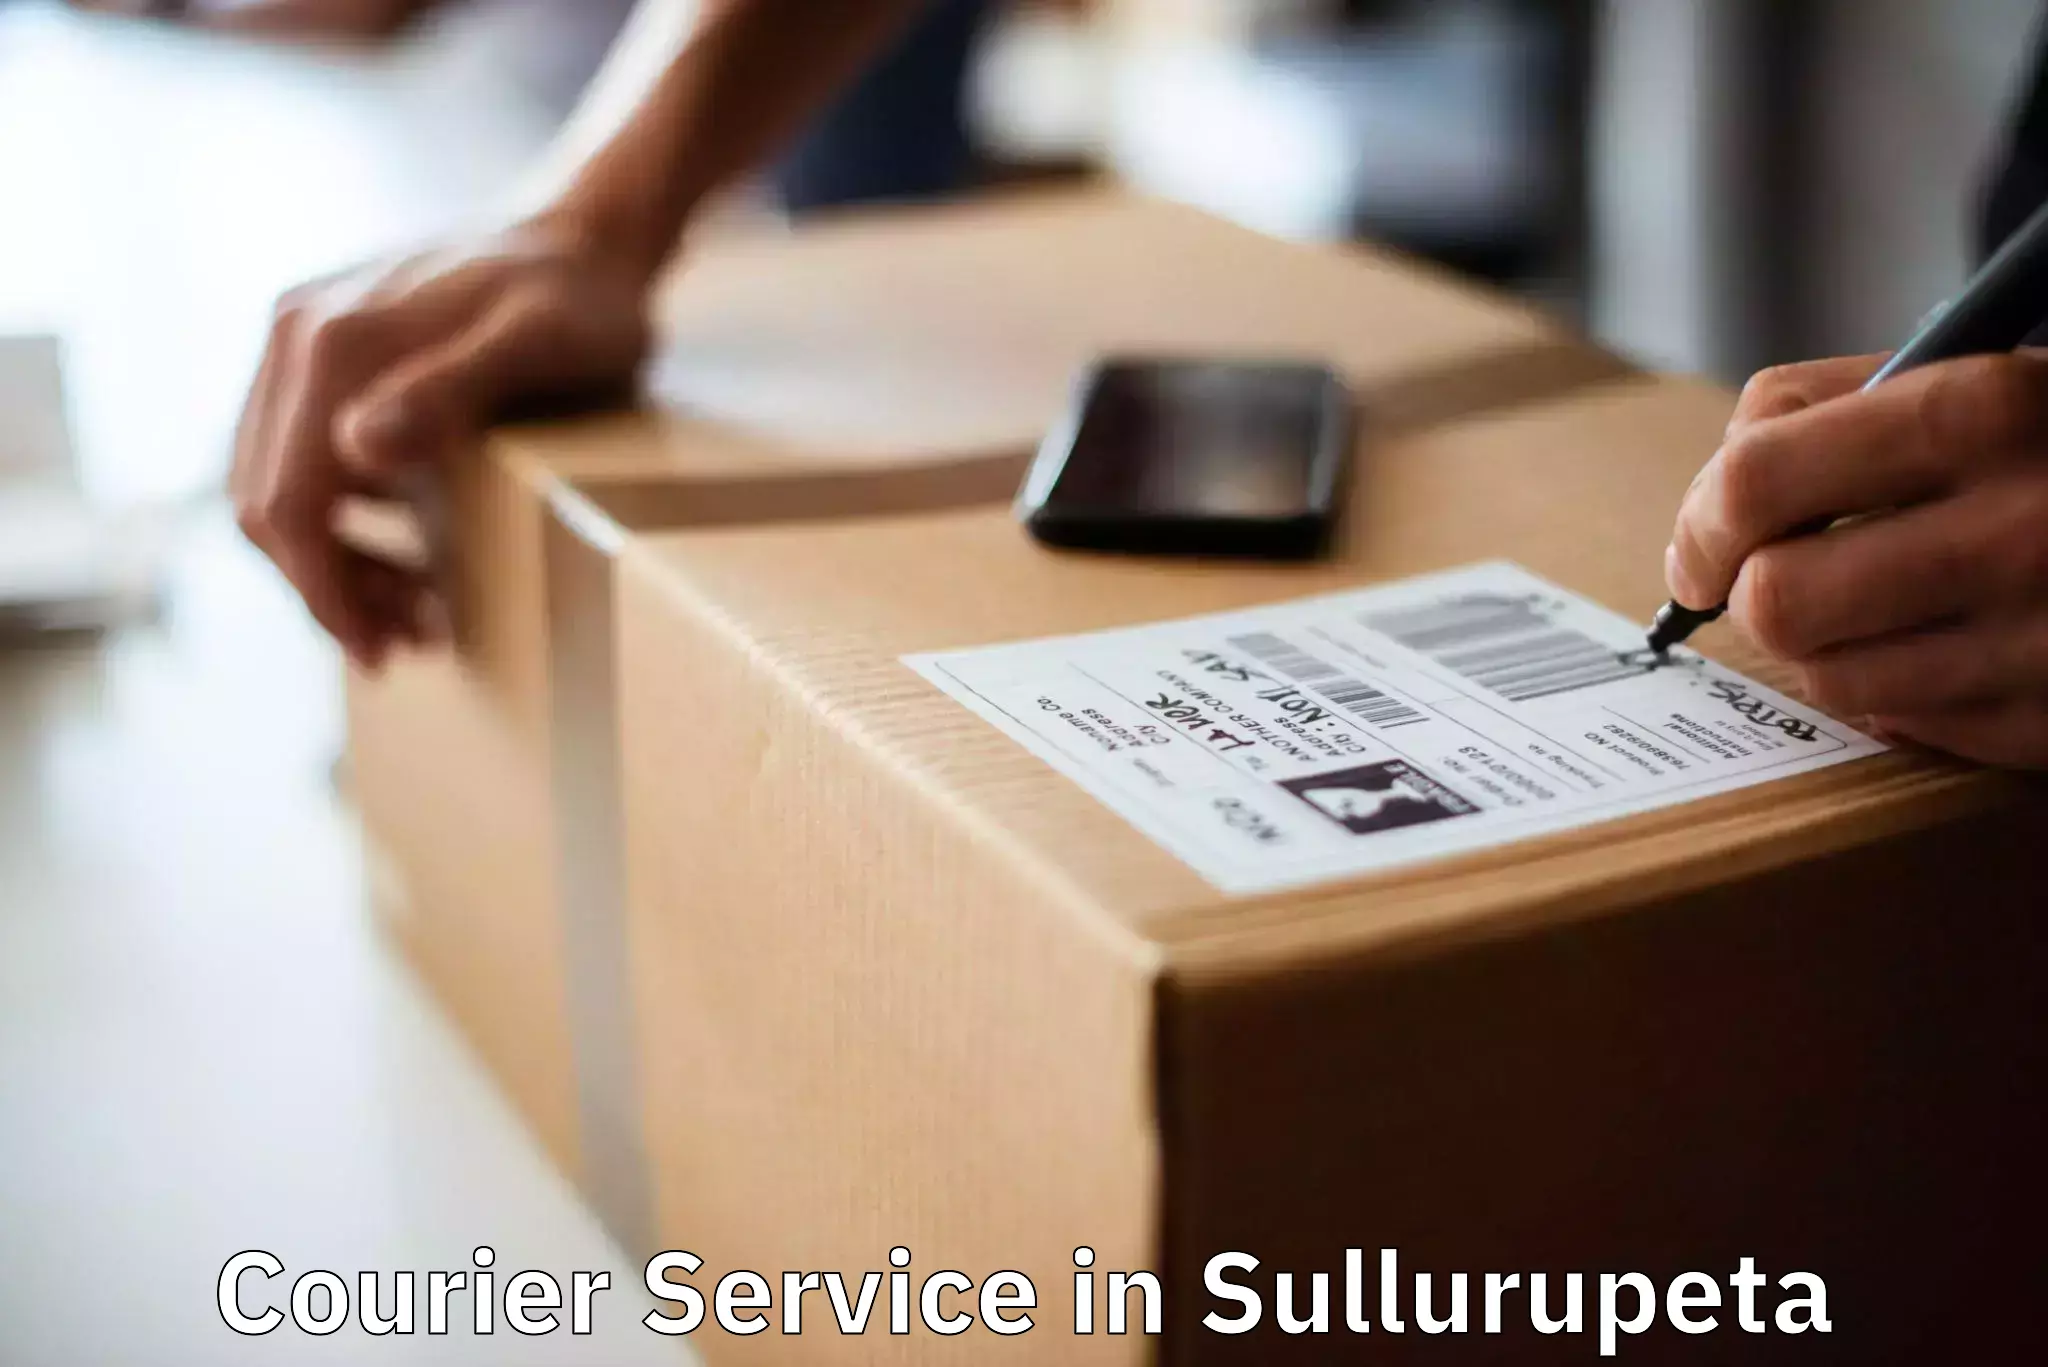 Domestic delivery options in Sullurupeta